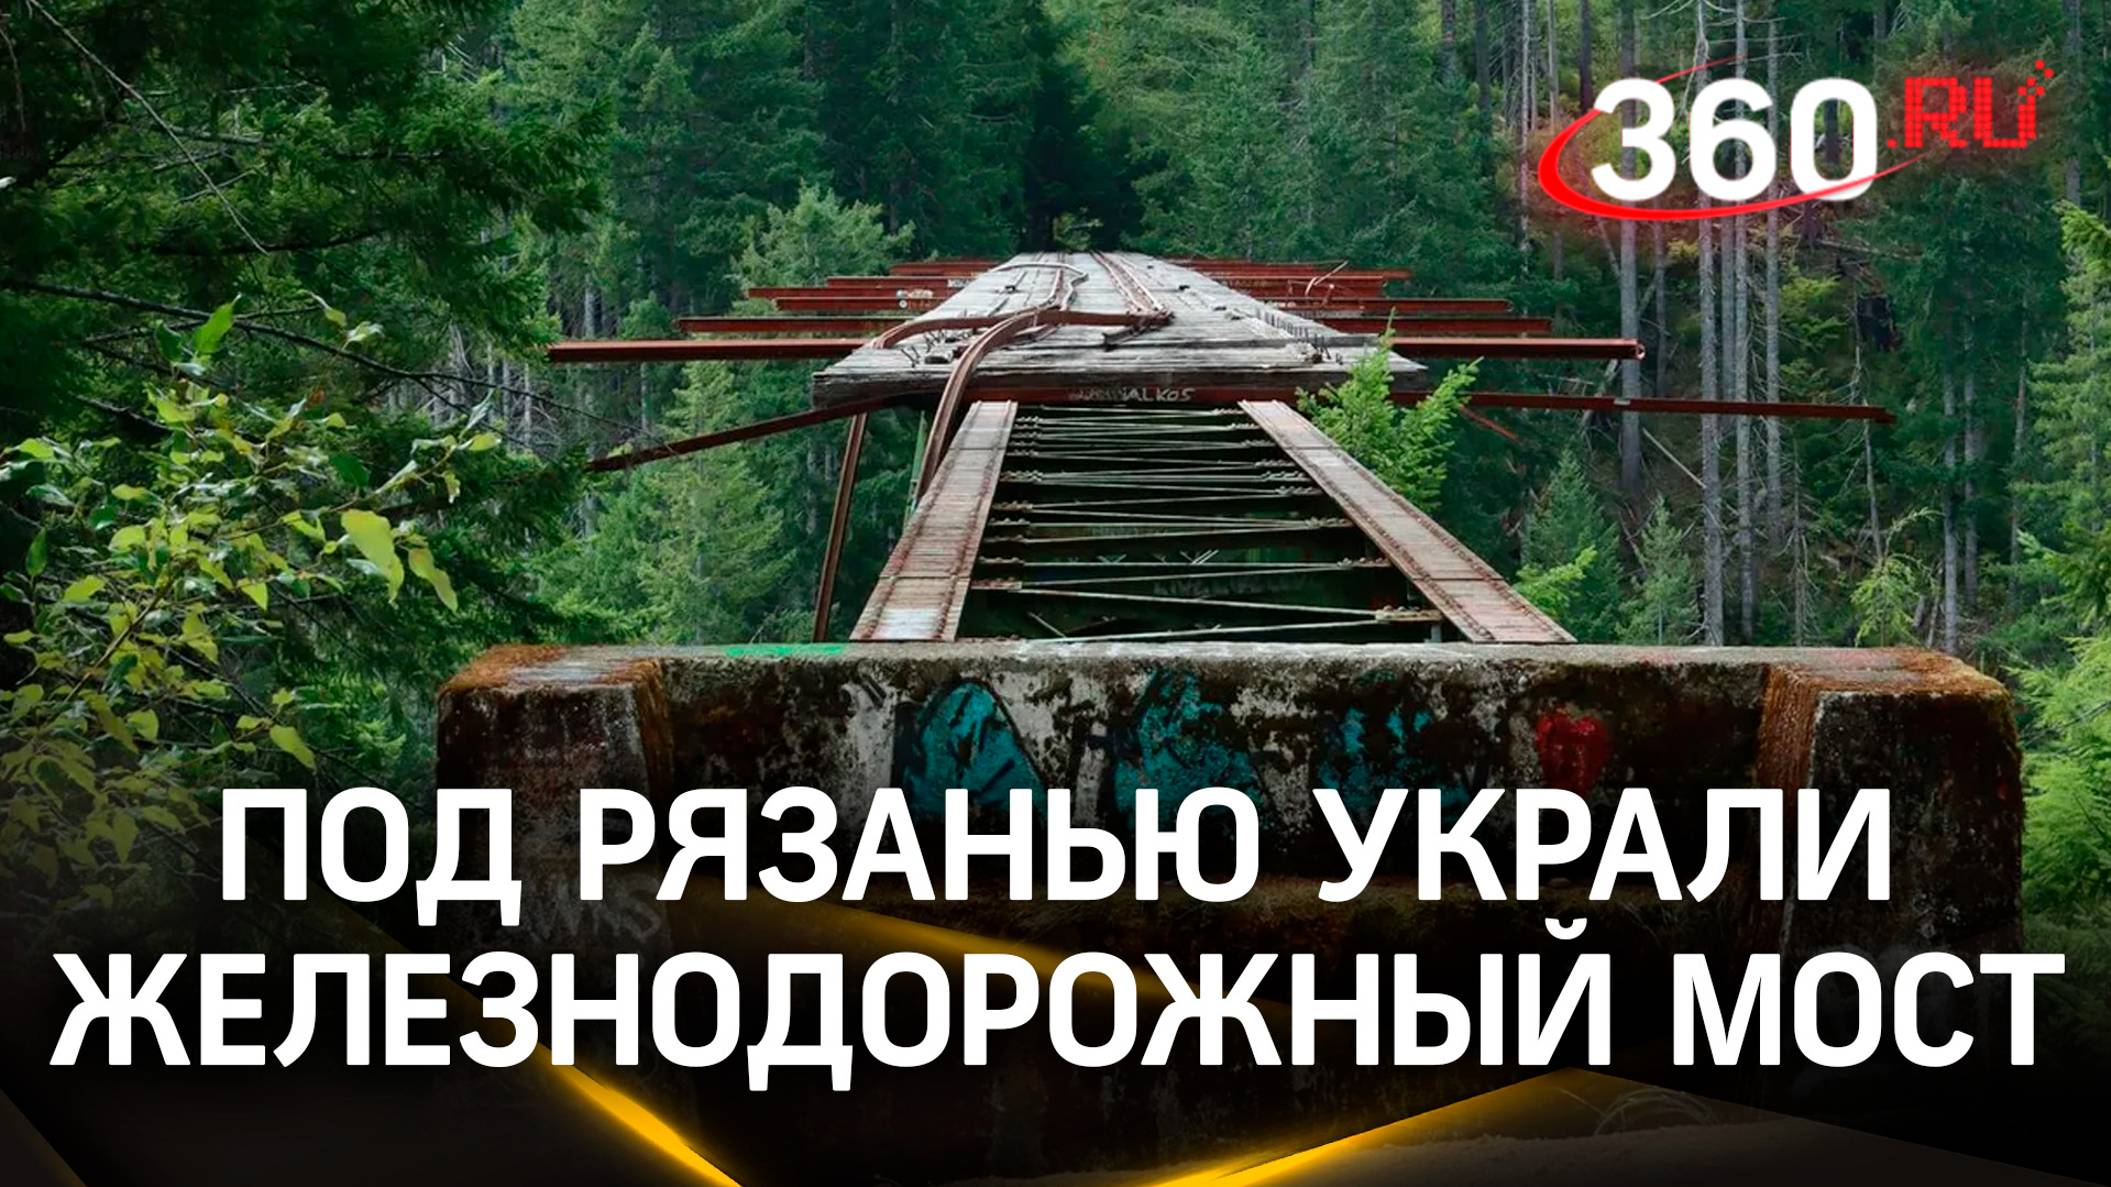 В Рязанской области украли железнодорожный мост. Вот прям целиком!